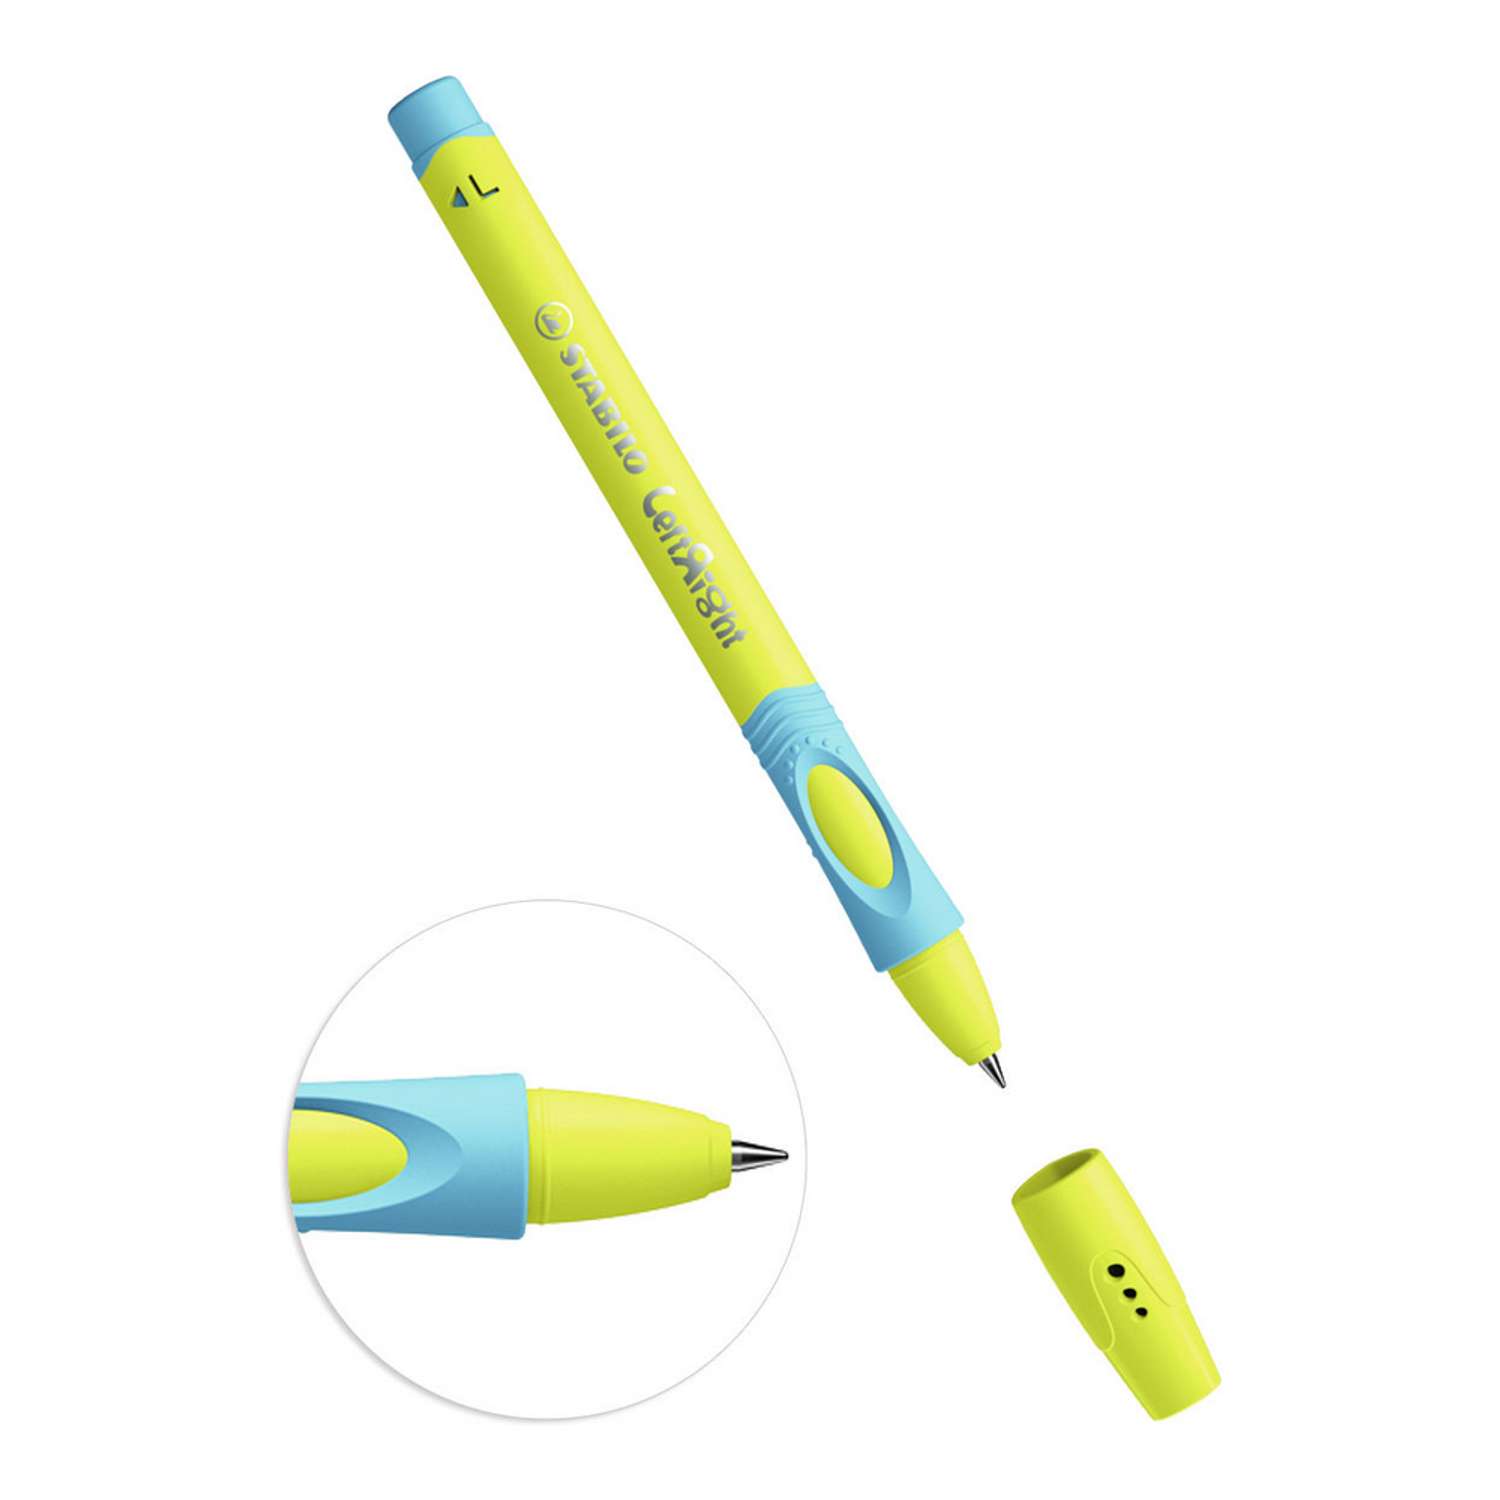 Ручка шариковая STABILO LeftRight для левшей для обучения письму F масляная синяя / корпус желто-голубой 6318/8-1B - фото 2